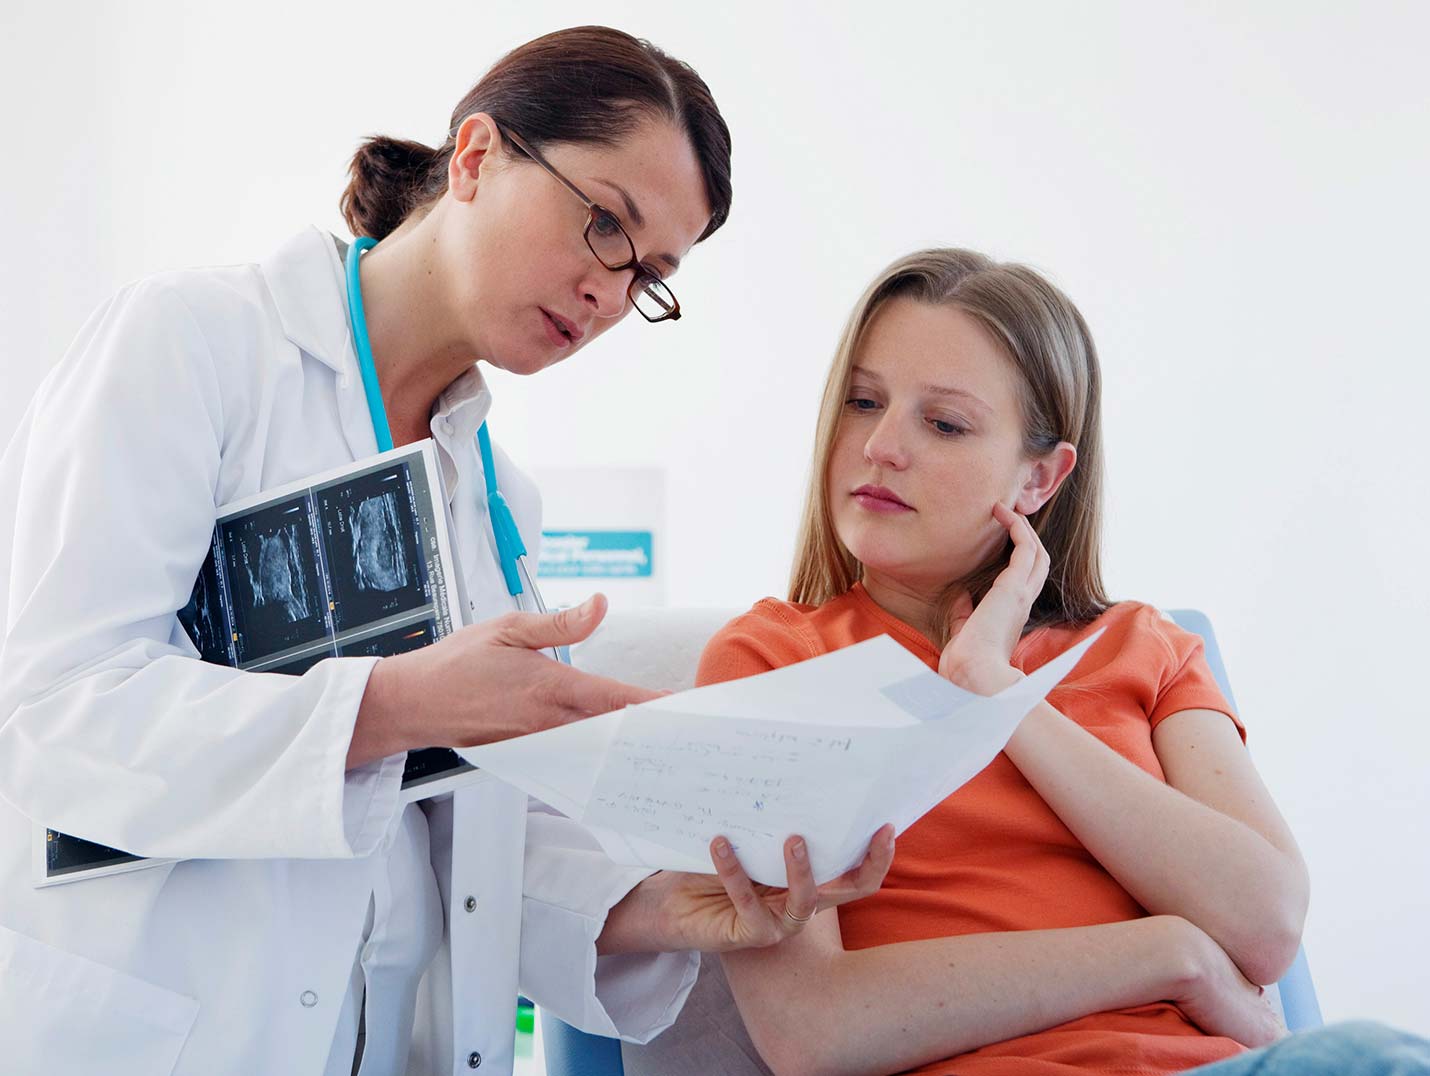 Doctora con bata blanca mostrándole los resultados de un estudio a una paciente que está sentada y viste una blusa naranja